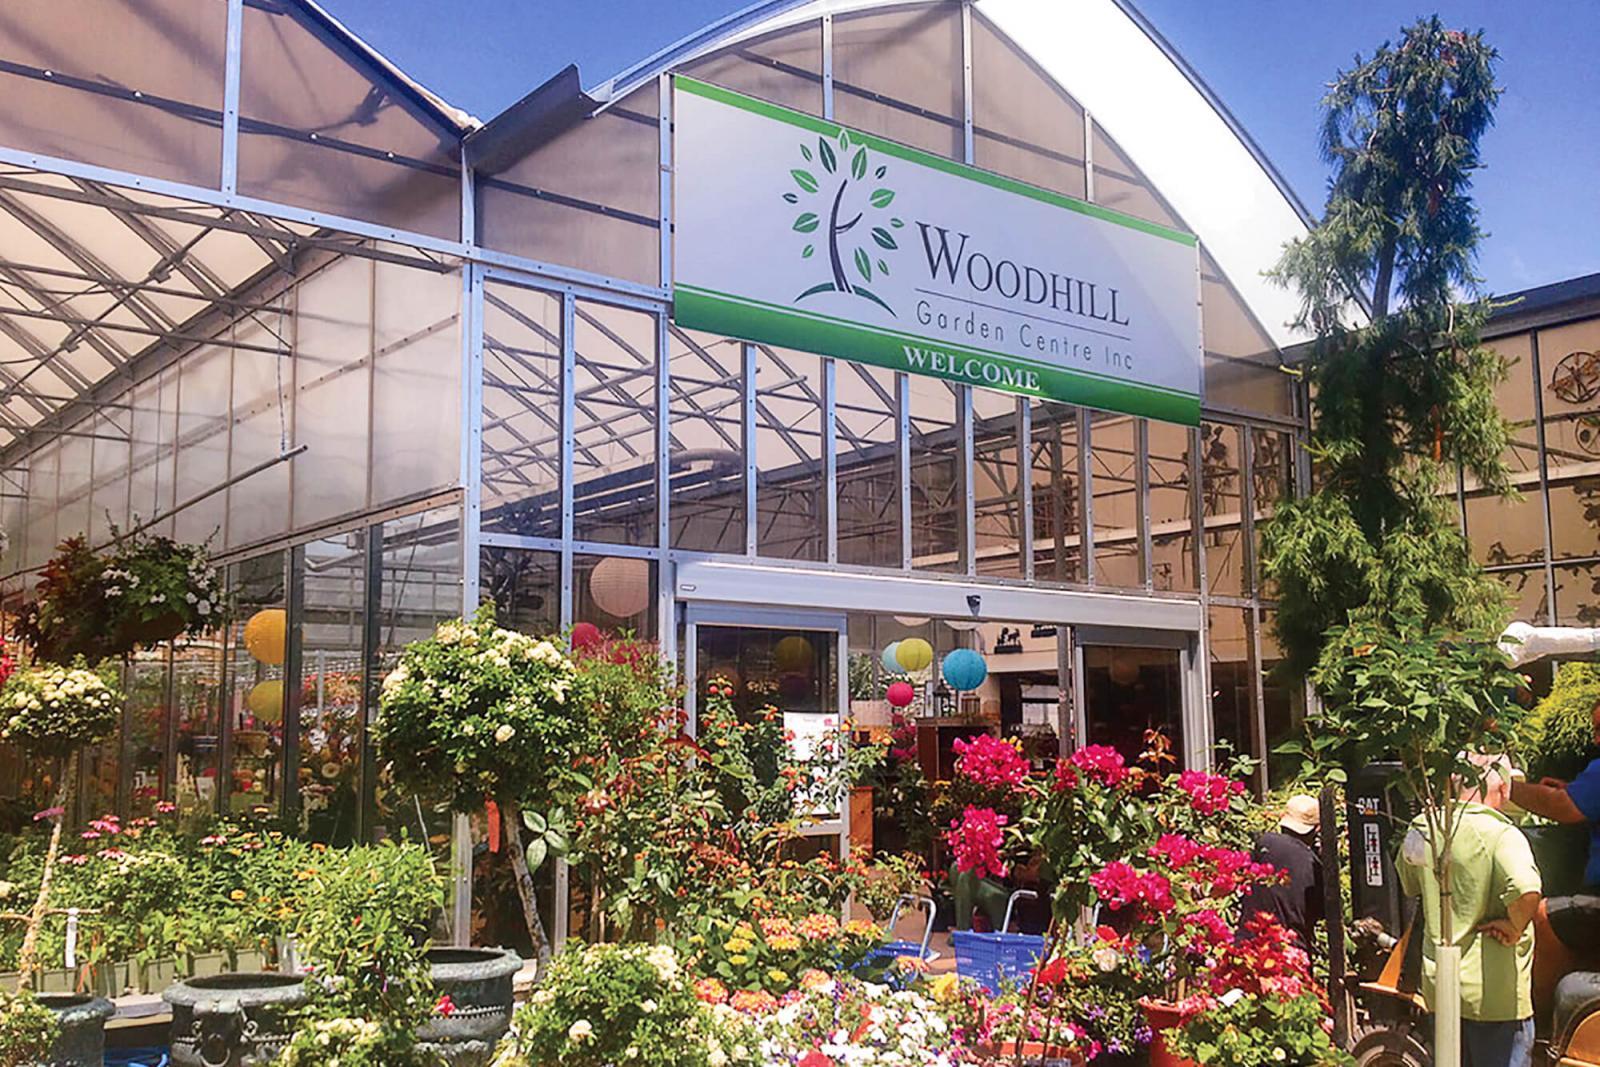 Woodhill Garden Centre celebrates 40th anniversary